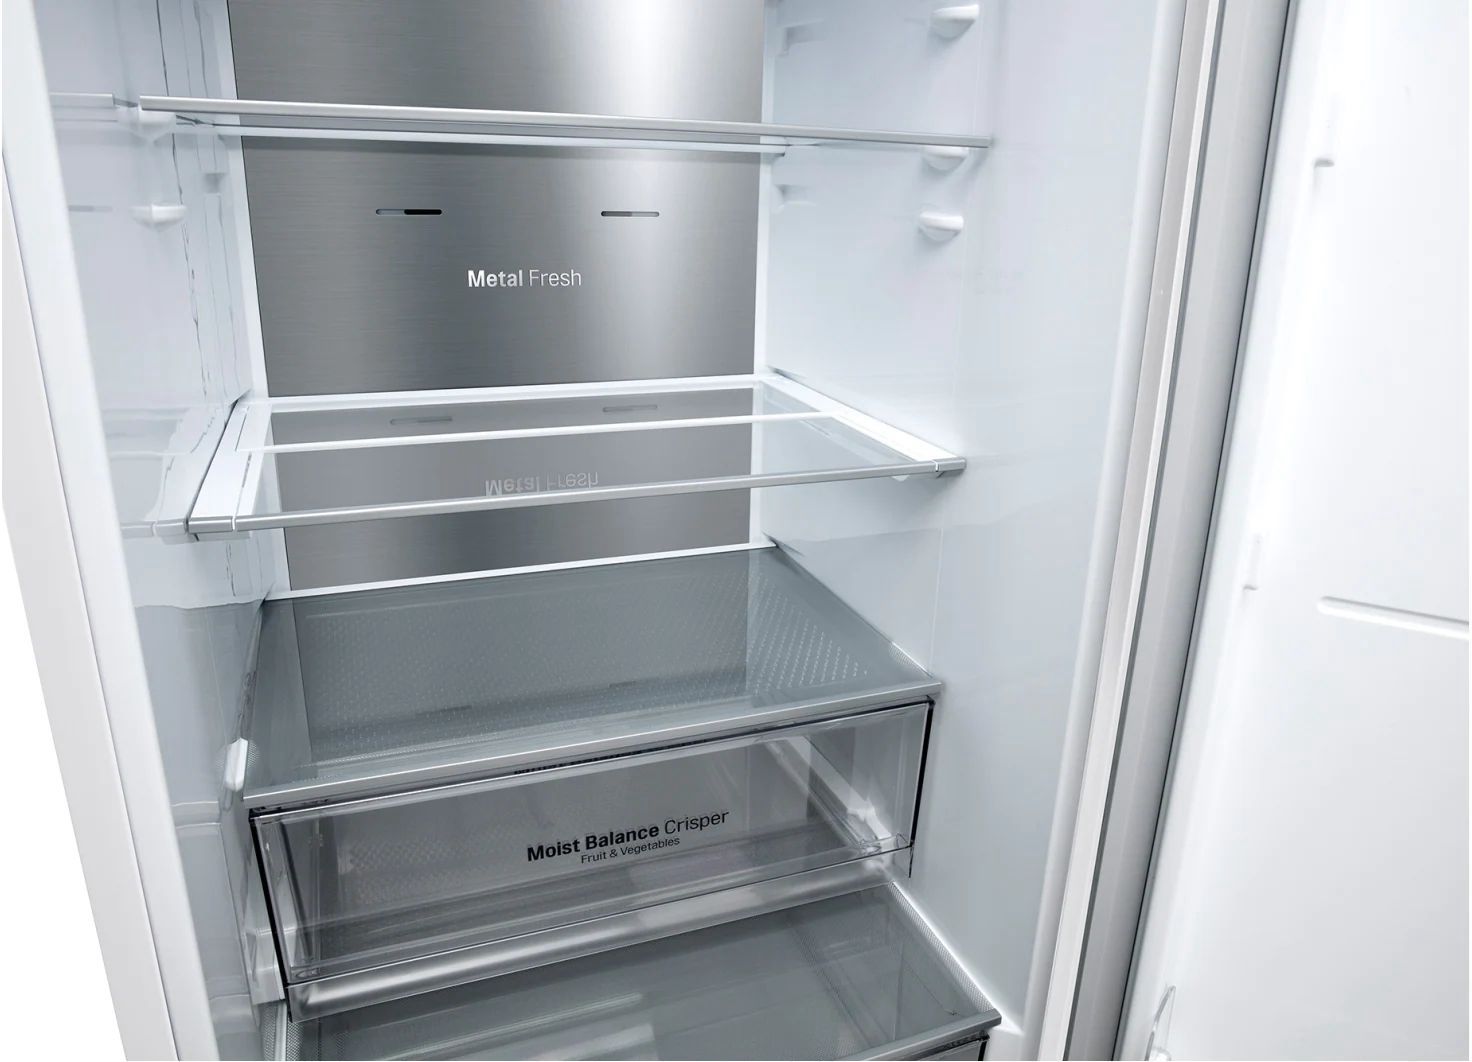 холодильник lg ga-b459mqqm, купить в Красноярске холодильник lg ga-b459mqqm,  купить в Красноярске дешево холодильник lg ga-b459mqqm, купить в Красноярске минимальной цене холодильник lg ga-b459mqqm